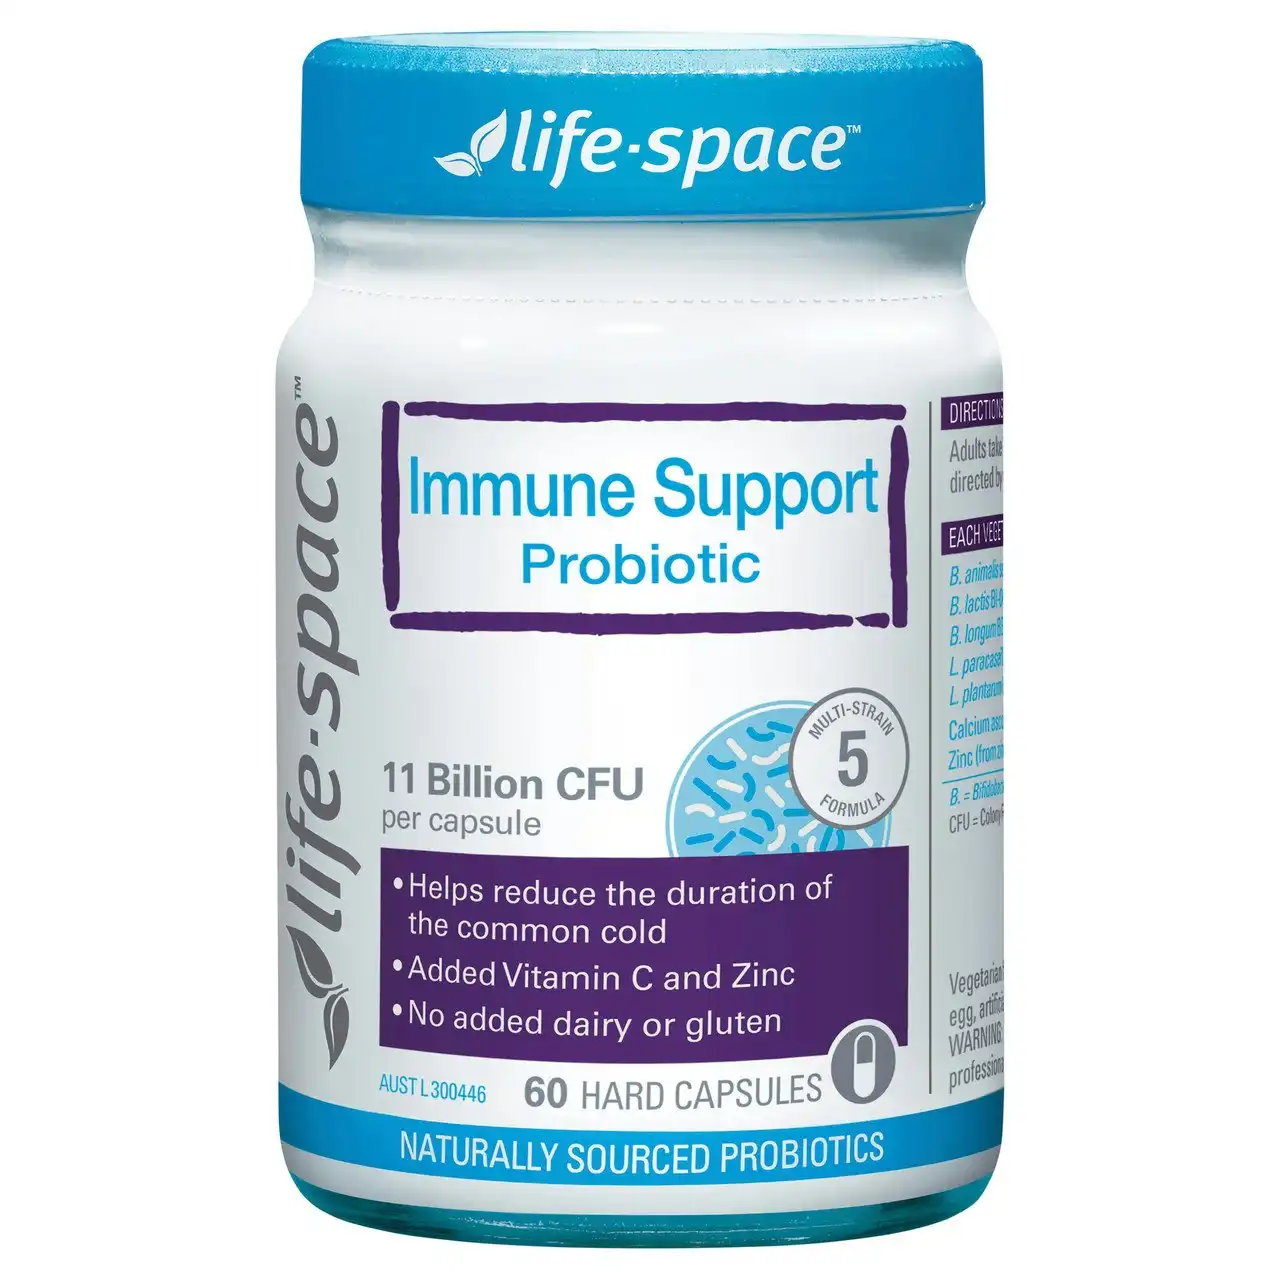 Life-Space Immune Support Probiotic 60 Hard Capsules